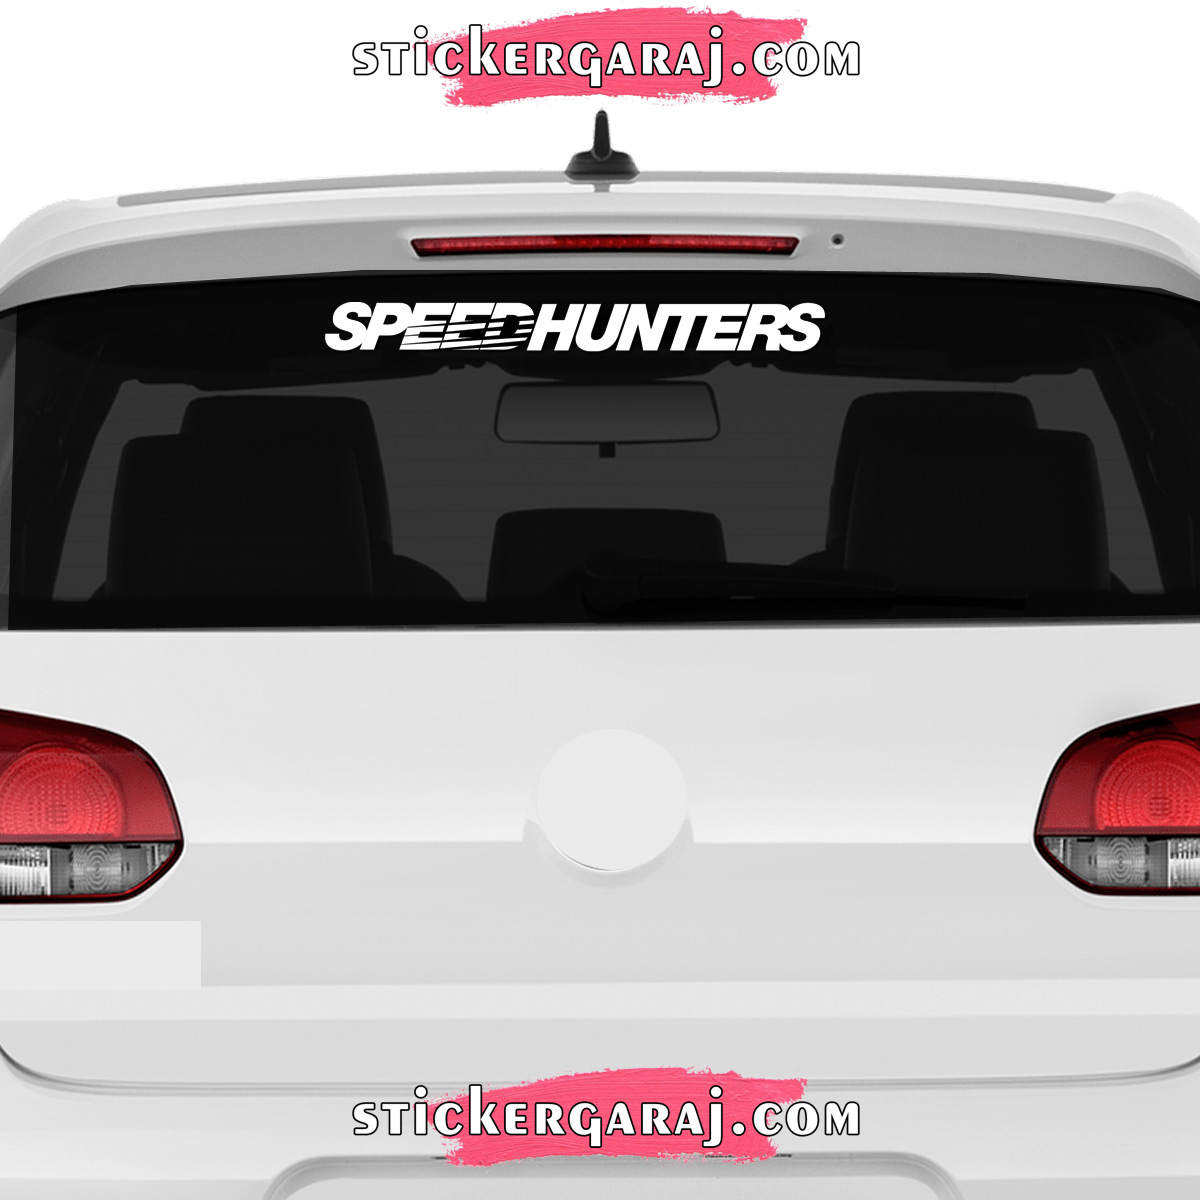 Mercedes cam sticker - Mercedes cam sticker - speedhunters